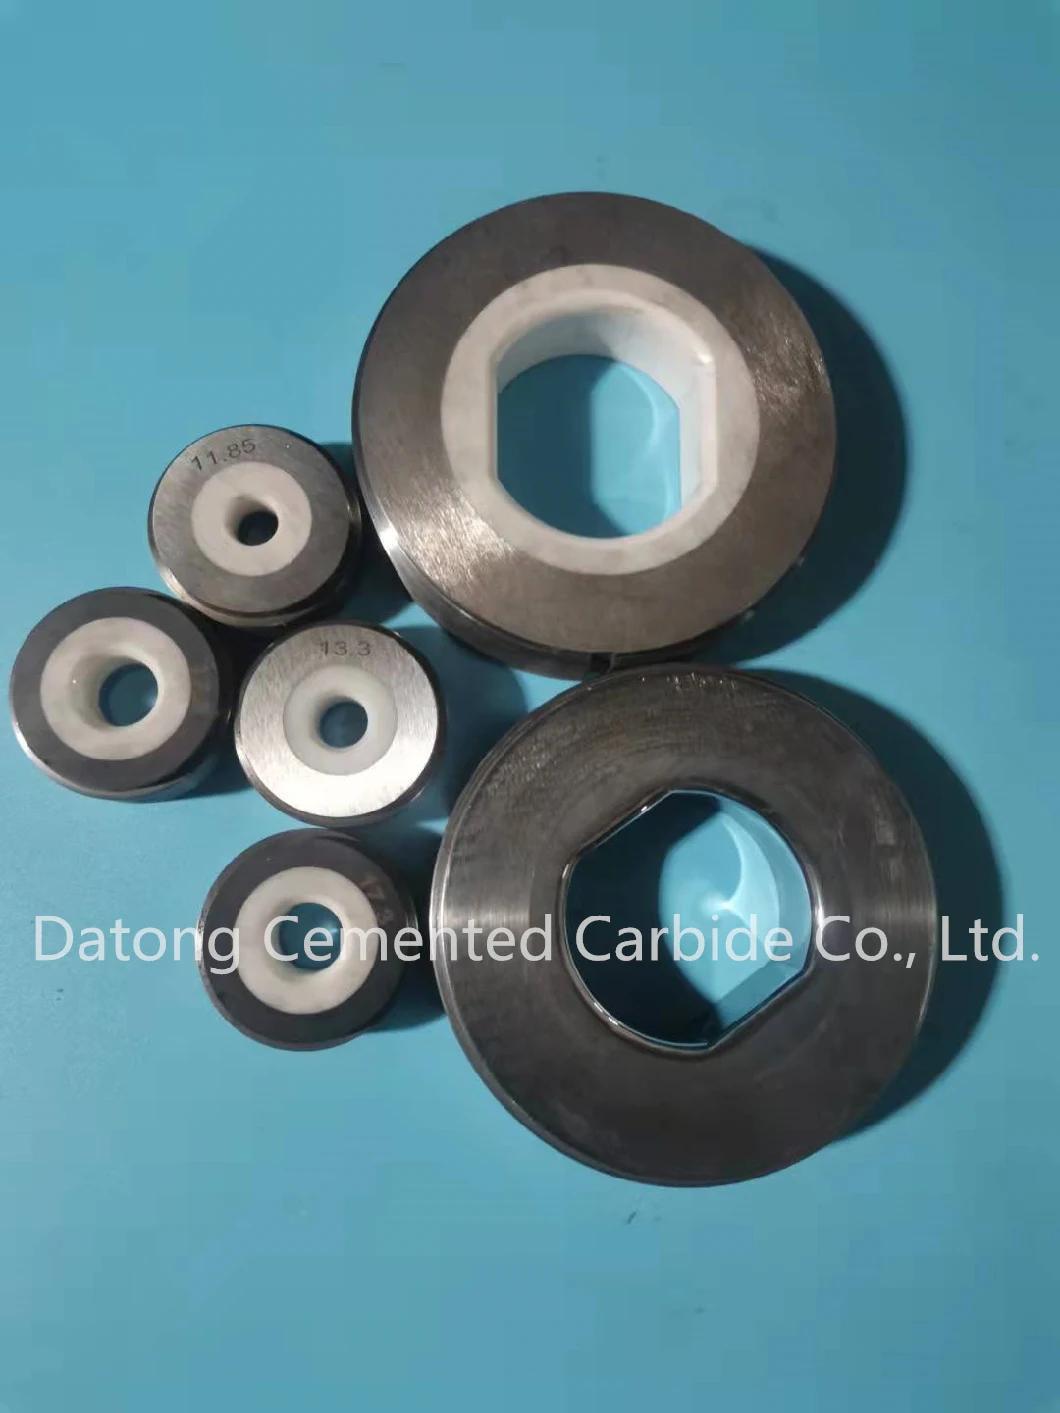 Non-Standard Custom Ceramic Products. Silicon Nitride. Zirconia. Boron Carbide. Ceramics